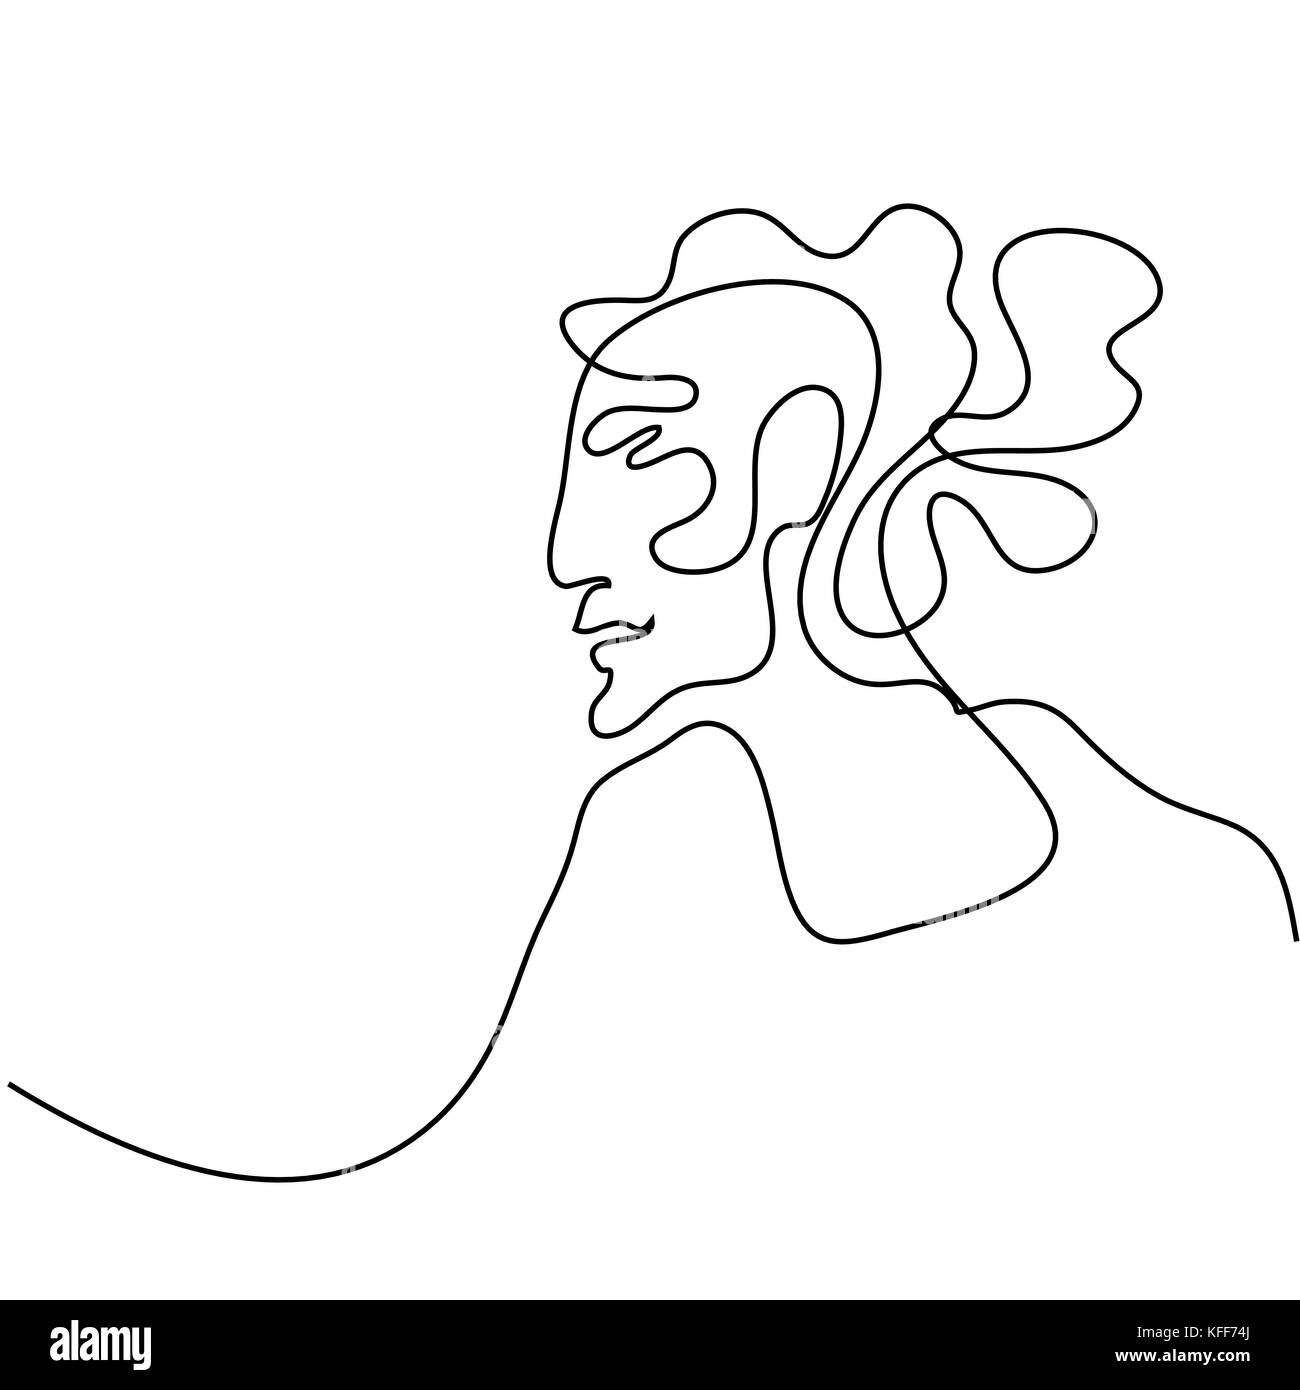 Rappresentazione in linea continua. Abstract ritratto di una donna. Illustrazione Vettoriale. Illustrazione Vettoriale